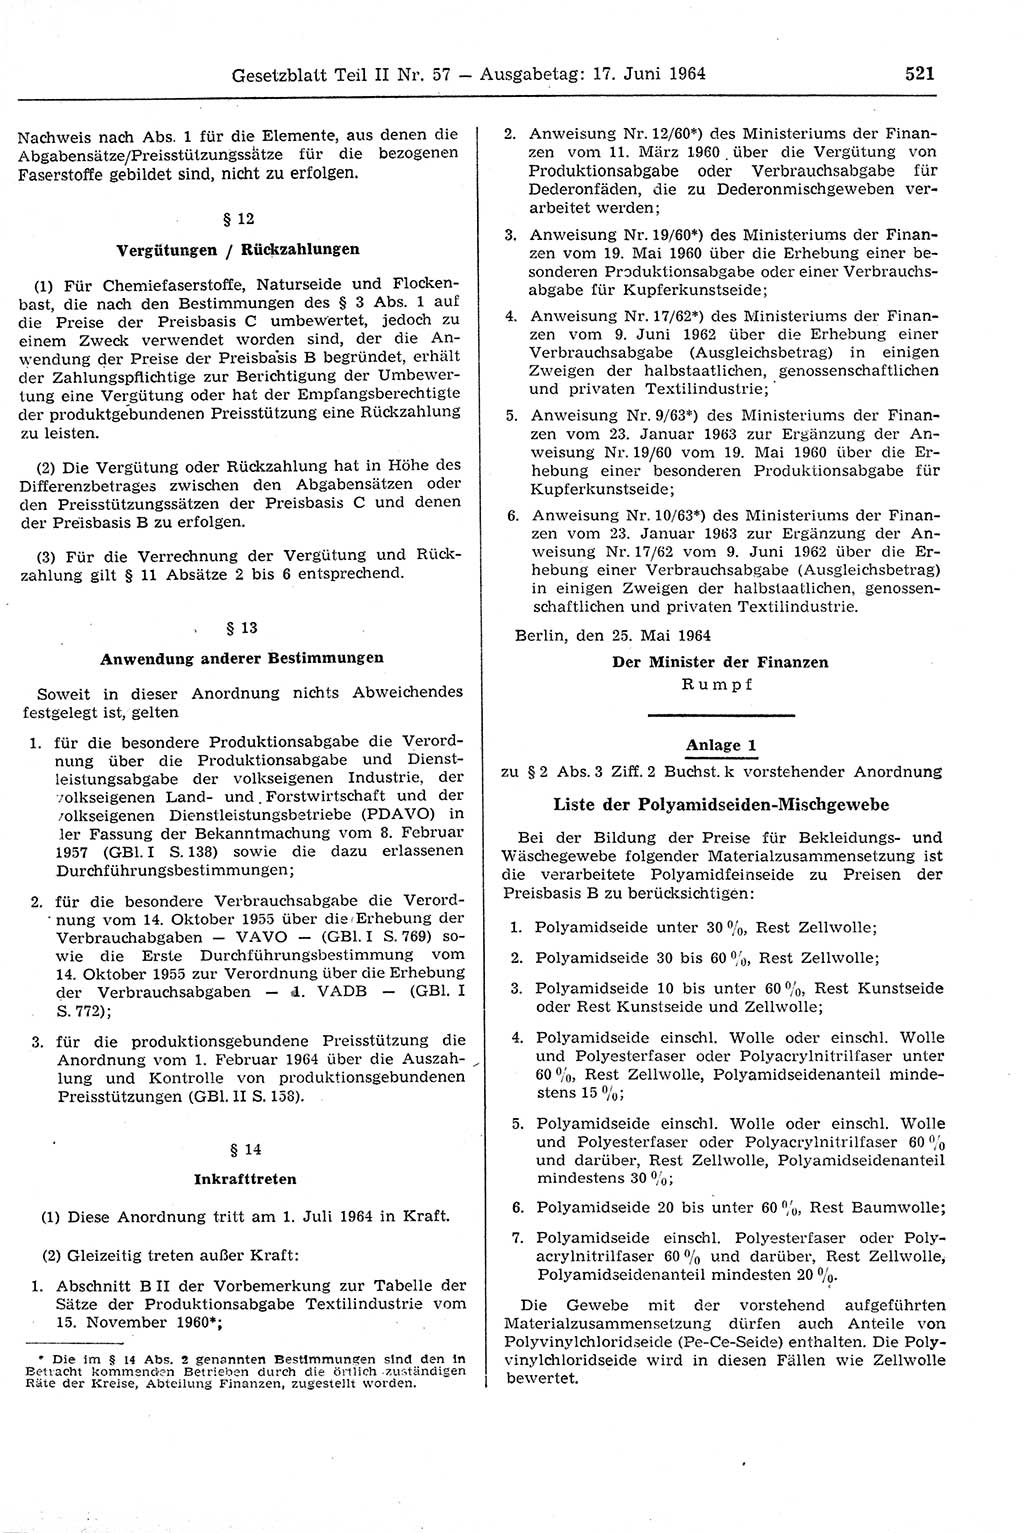 Gesetzblatt (GBl.) der Deutschen Demokratischen Republik (DDR) Teil ⅠⅠ 1964, Seite 521 (GBl. DDR ⅠⅠ 1964, S. 521)